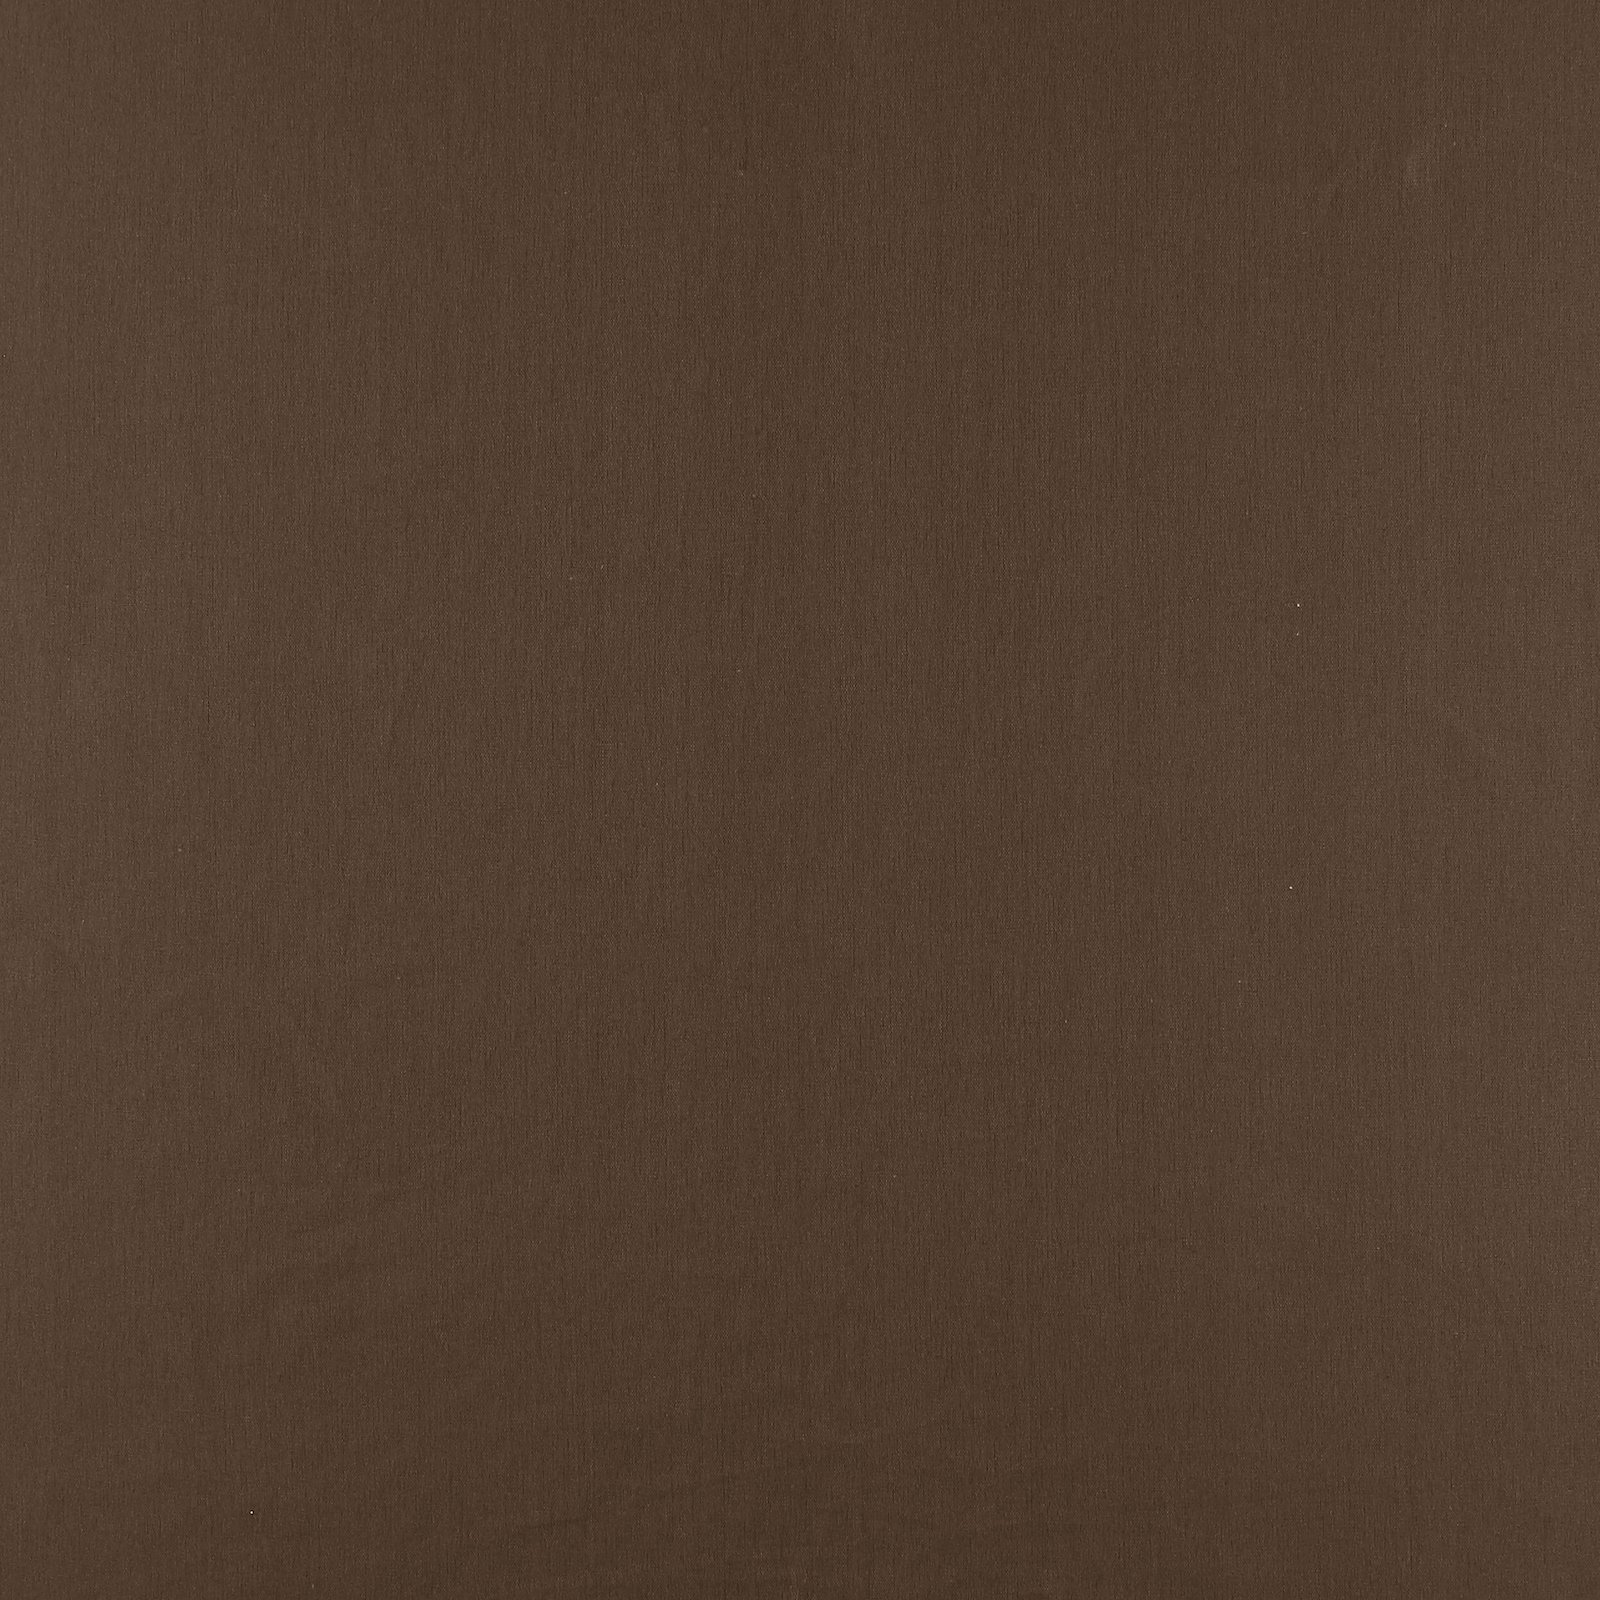 Linen/cotton dark brown 410150_pack_solid